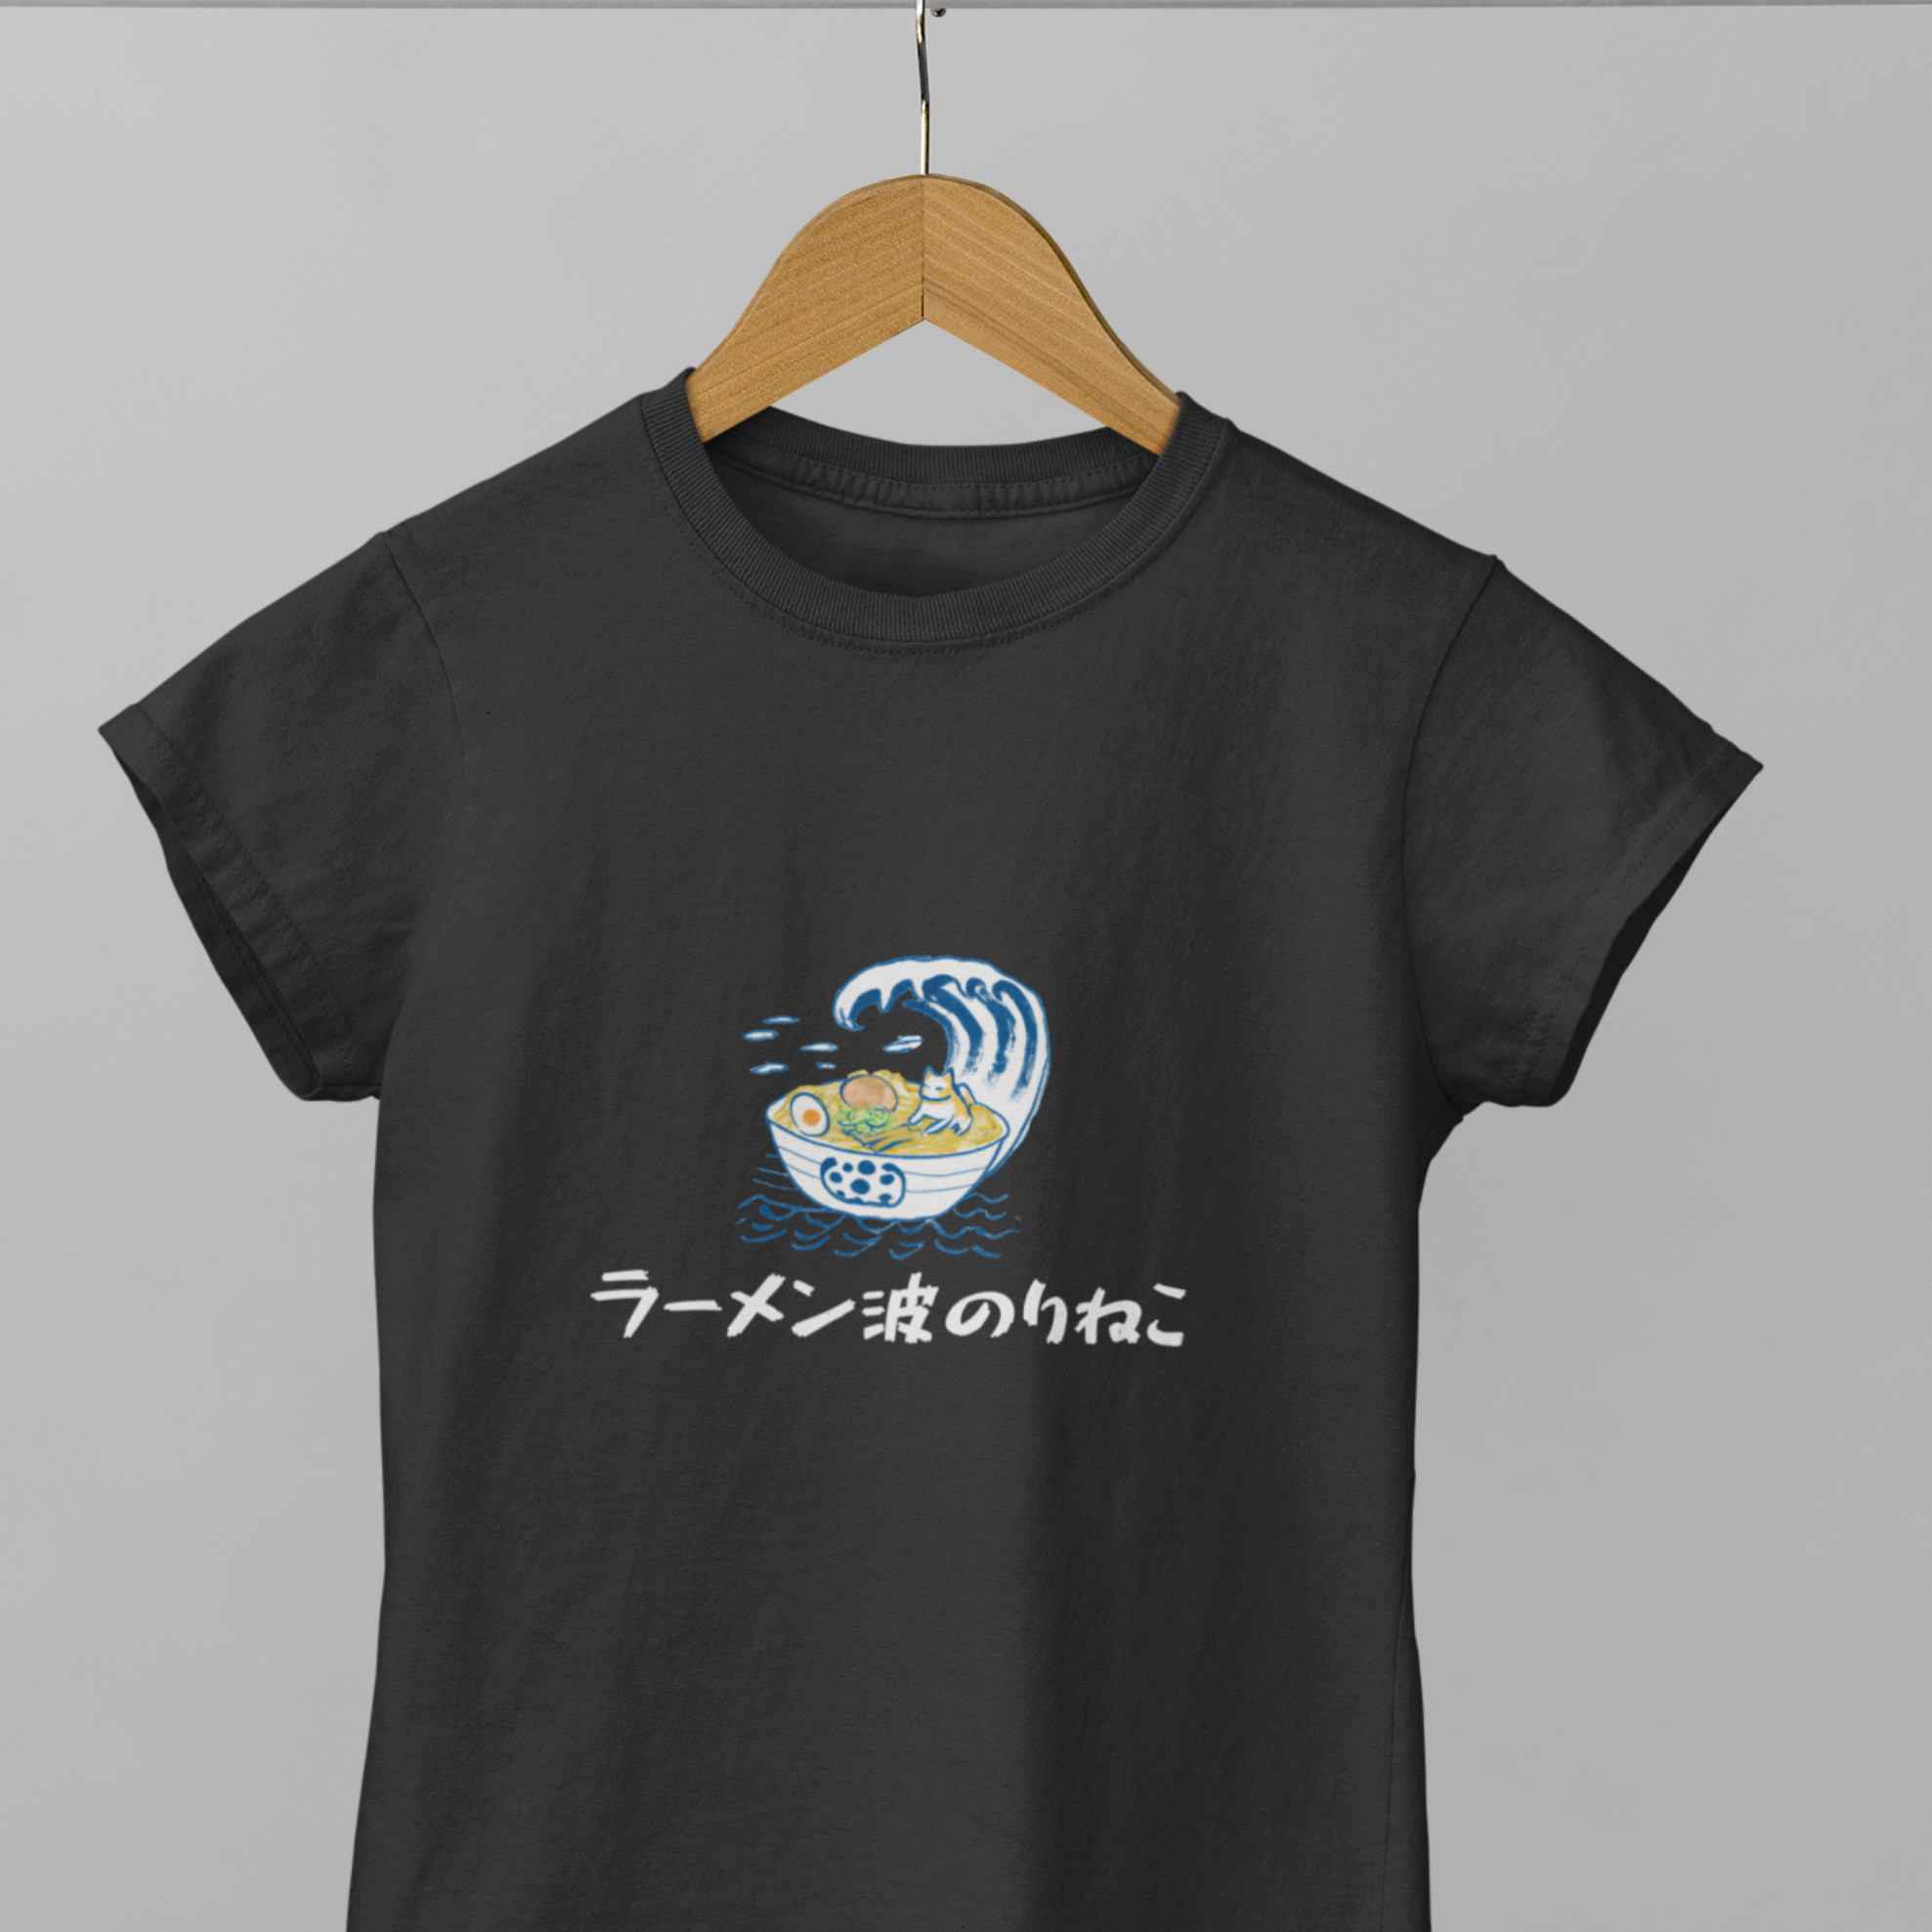 Ramen T-shirt with Japanese Cat Riding the Waves of Flavour - Foodie Shirt with Ramen Art, Japanese Shirt, Ramen T-Shirt